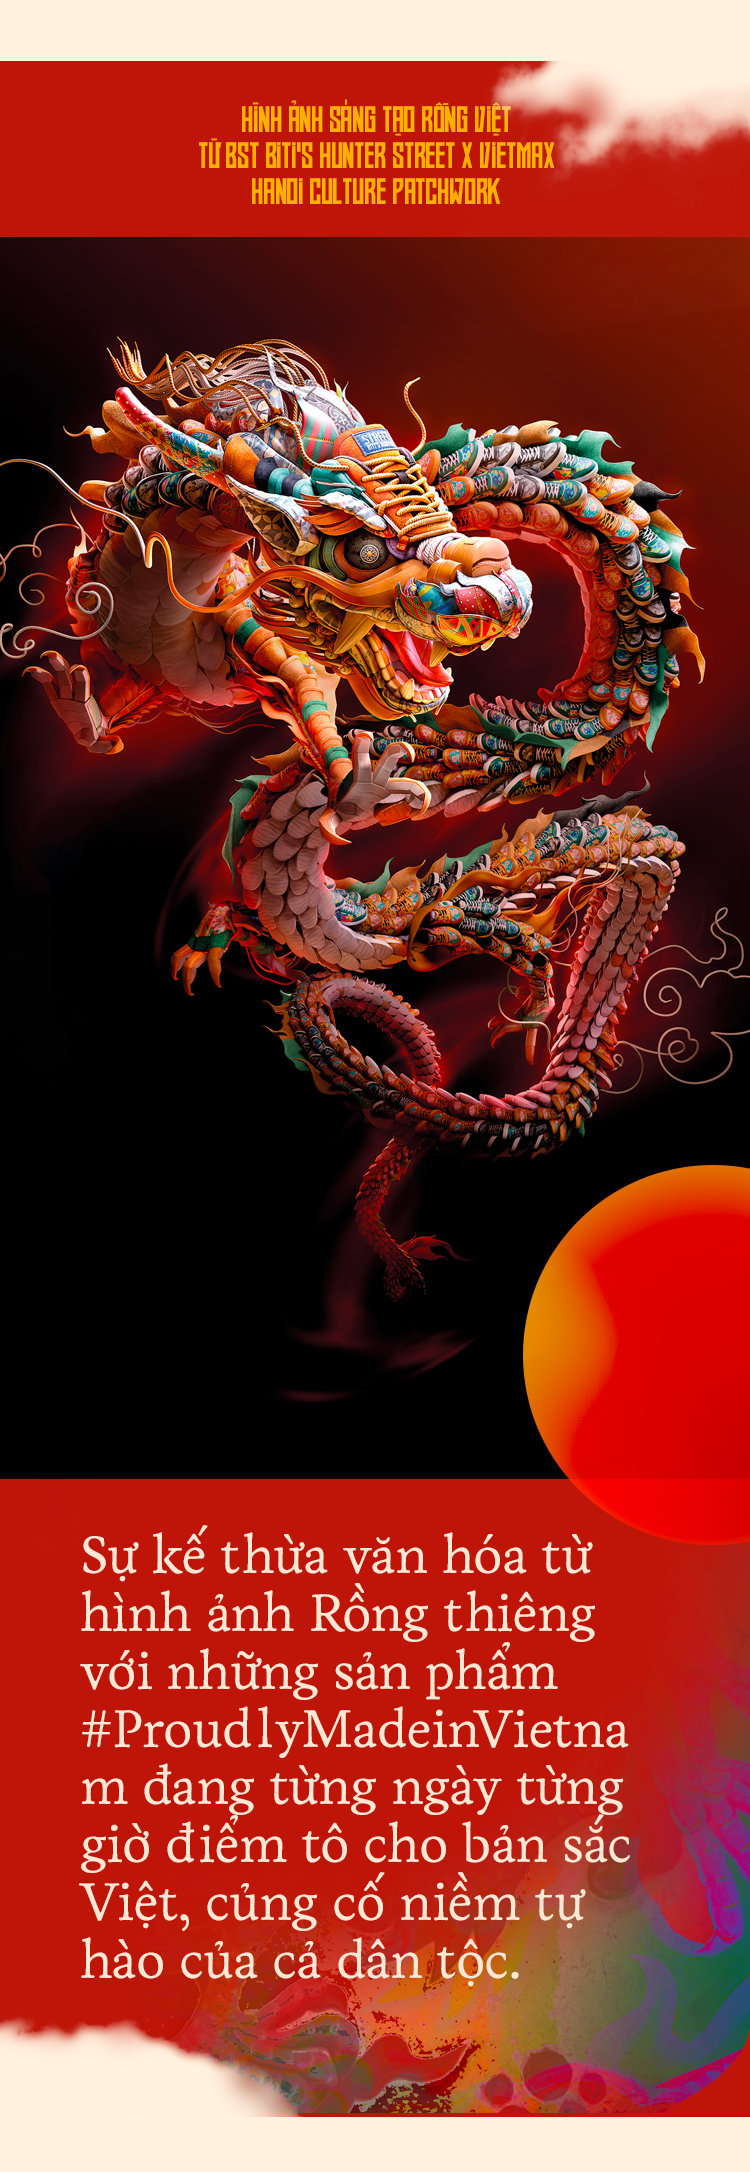 Rồng và rắn là hai biểu tượng văn hóa quan trọng của người Á đông. Họ thể hiện sức mạnh, quyền lực và sự bền bỉ. Hãy khám phá hình ảnh này để cảm nhận sự tuyệt vời của những vật phẩm nghệ thuật có thể hiện rồng và rắn.